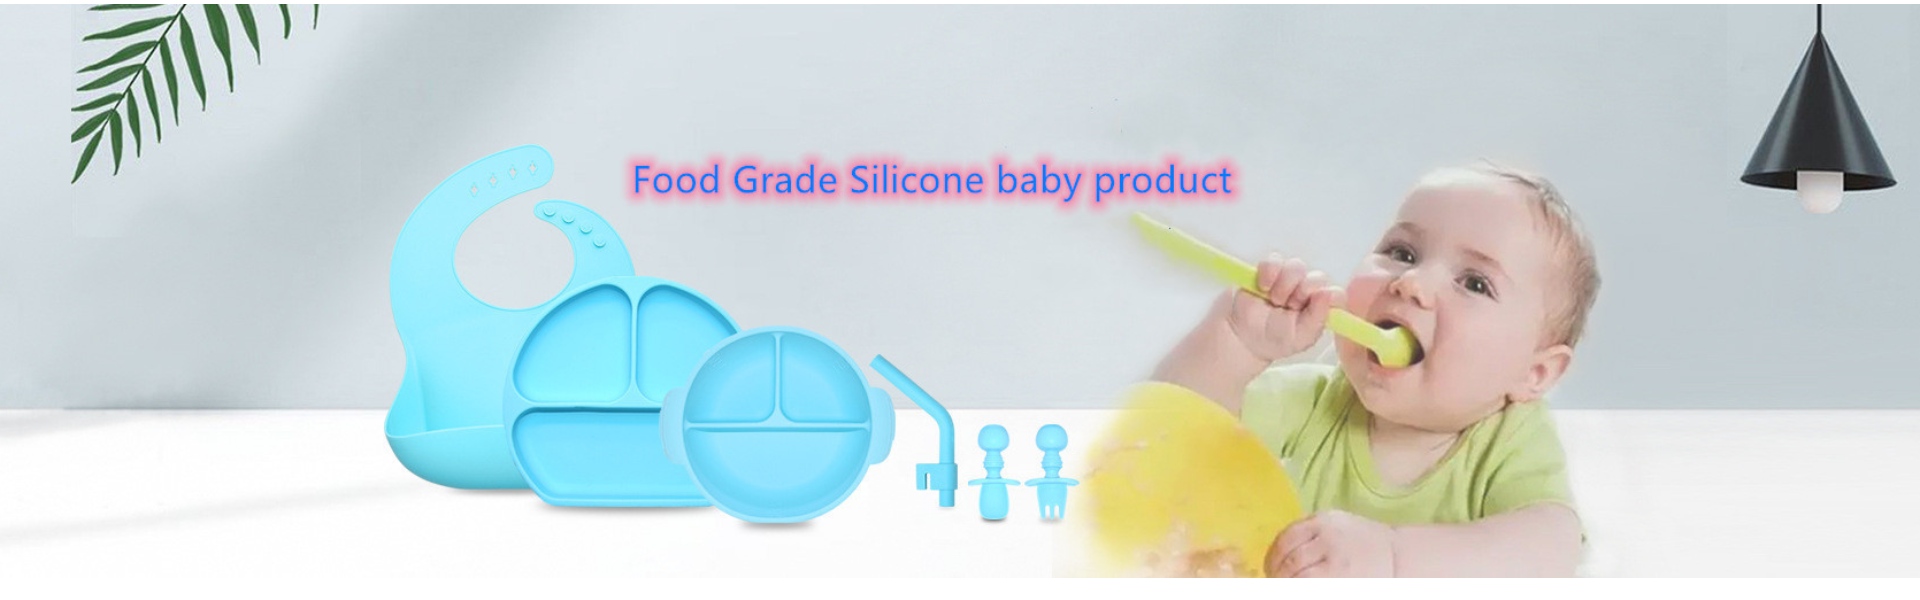 Cucina in silicone, stampi di ghiaccio in silicone, prodotto in silicone,Huizhou Calipolo accessory Ltd